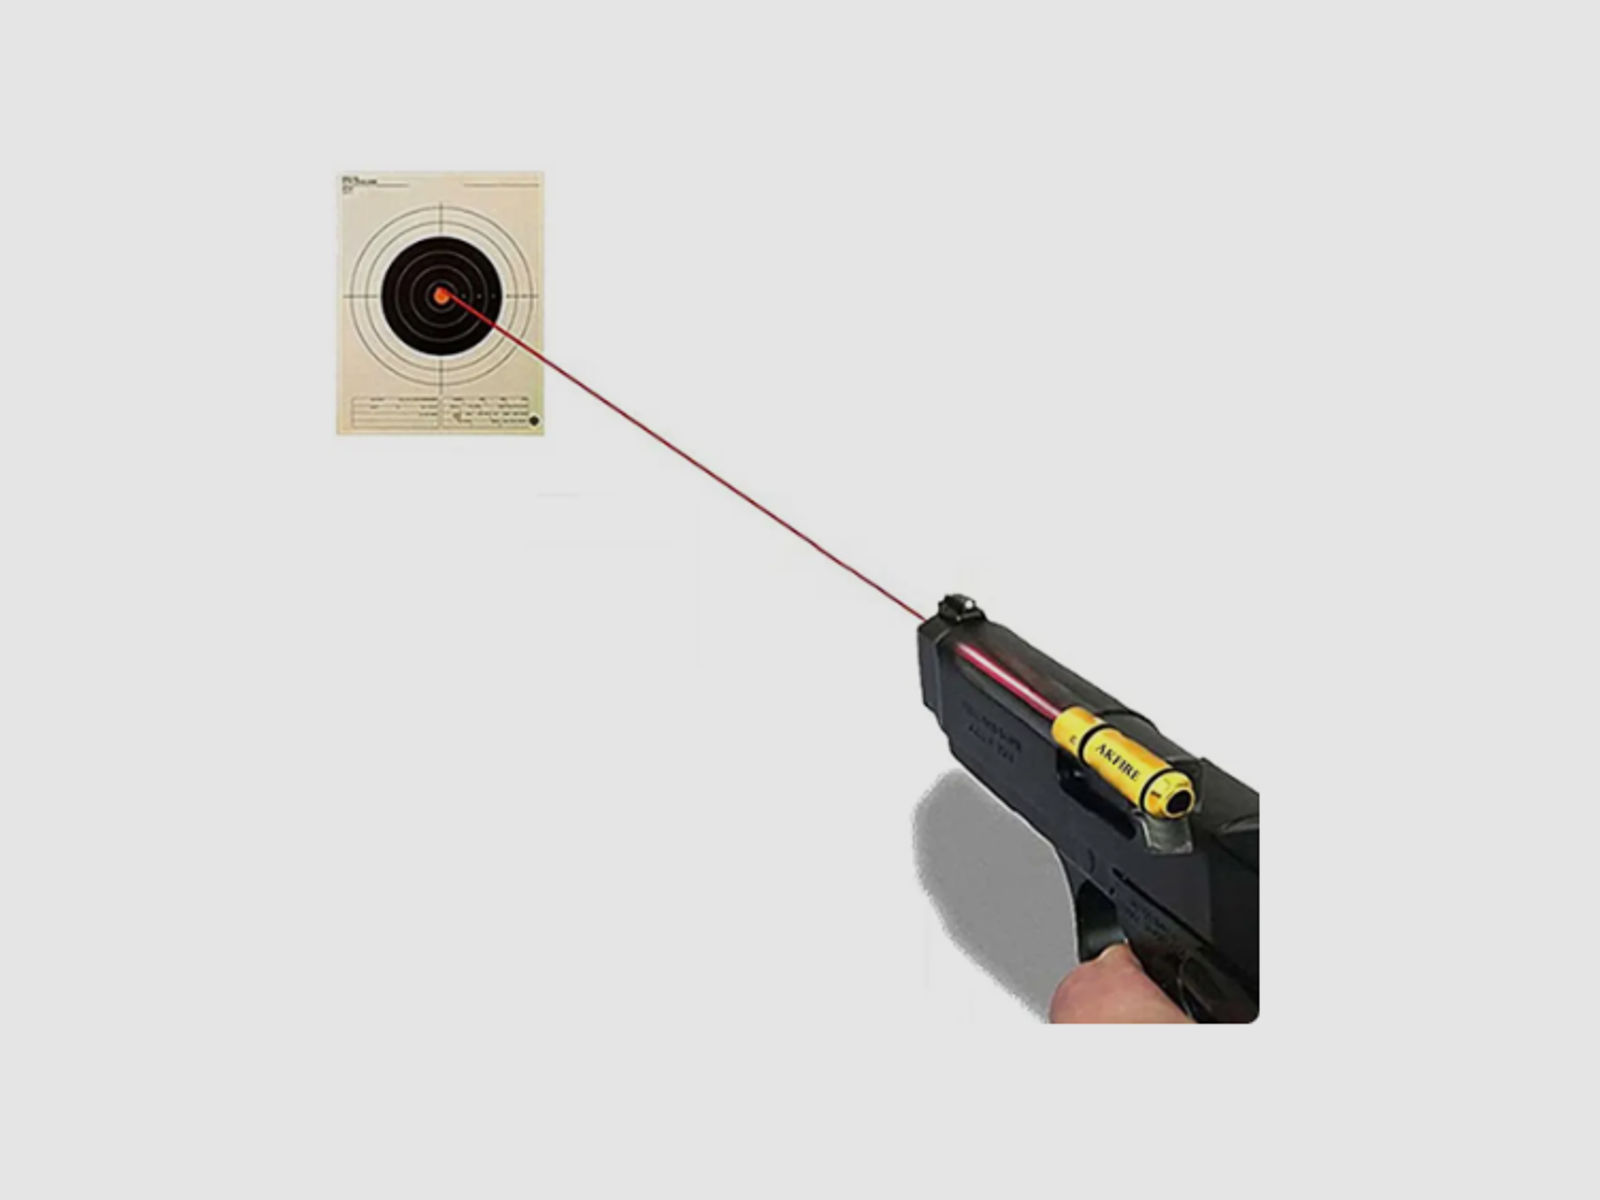  Laserpatrone  Dry Fire Trockenfeuer Schießkino 9 x 19 